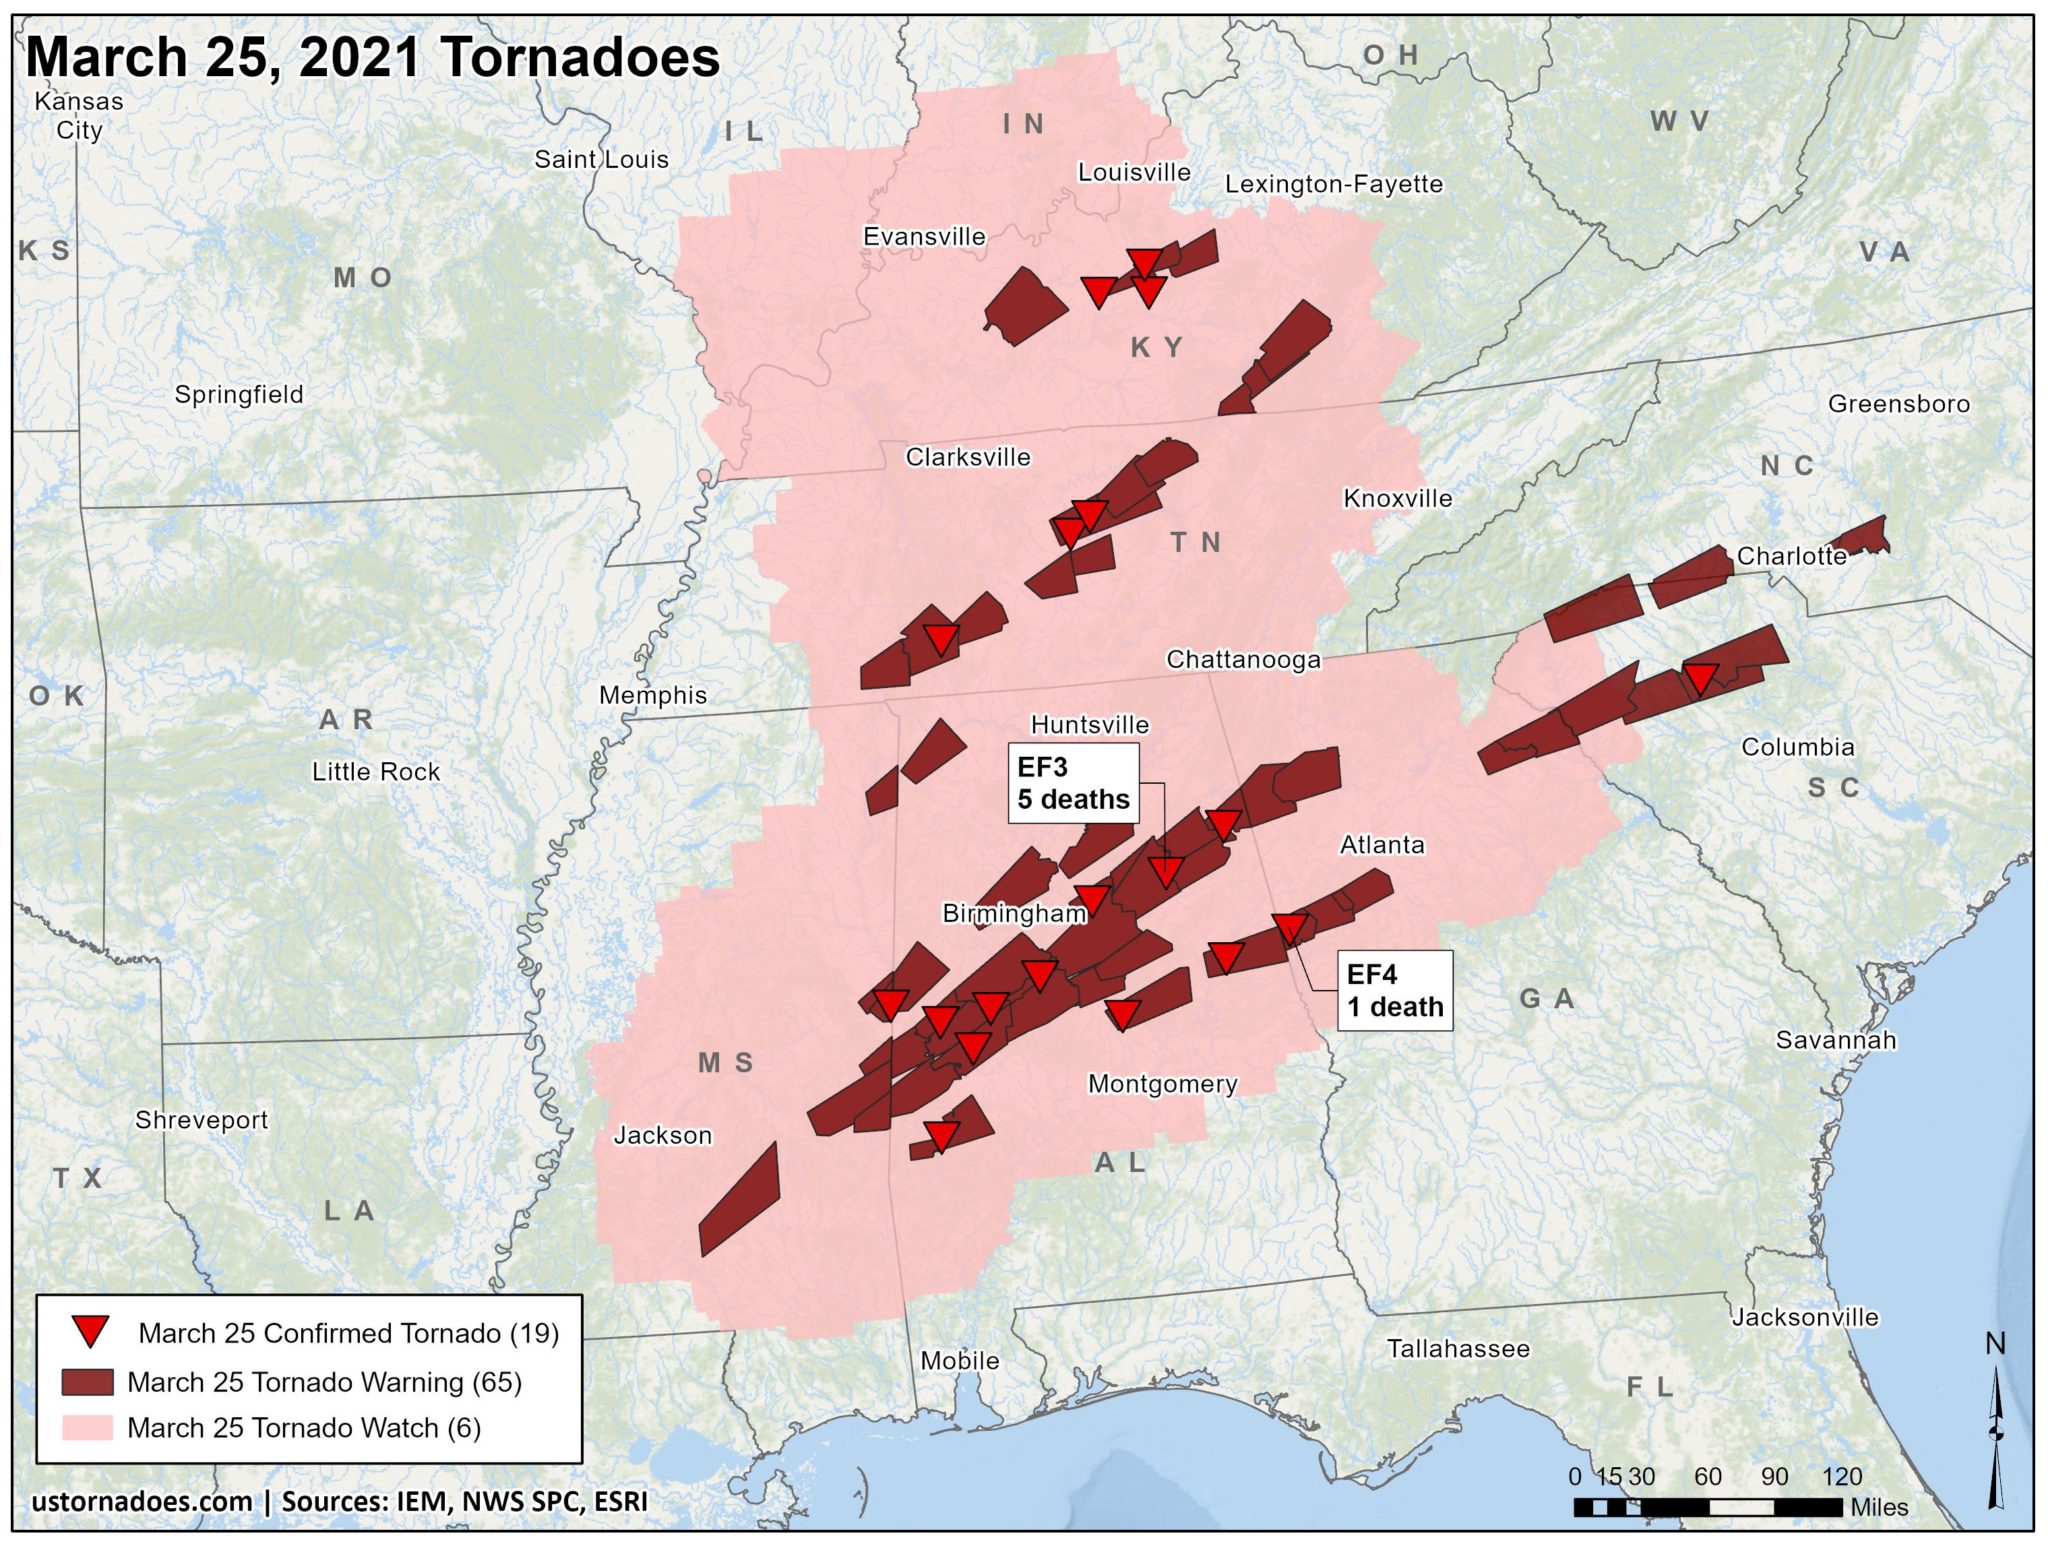 March 25, 2021 tornado outbreak